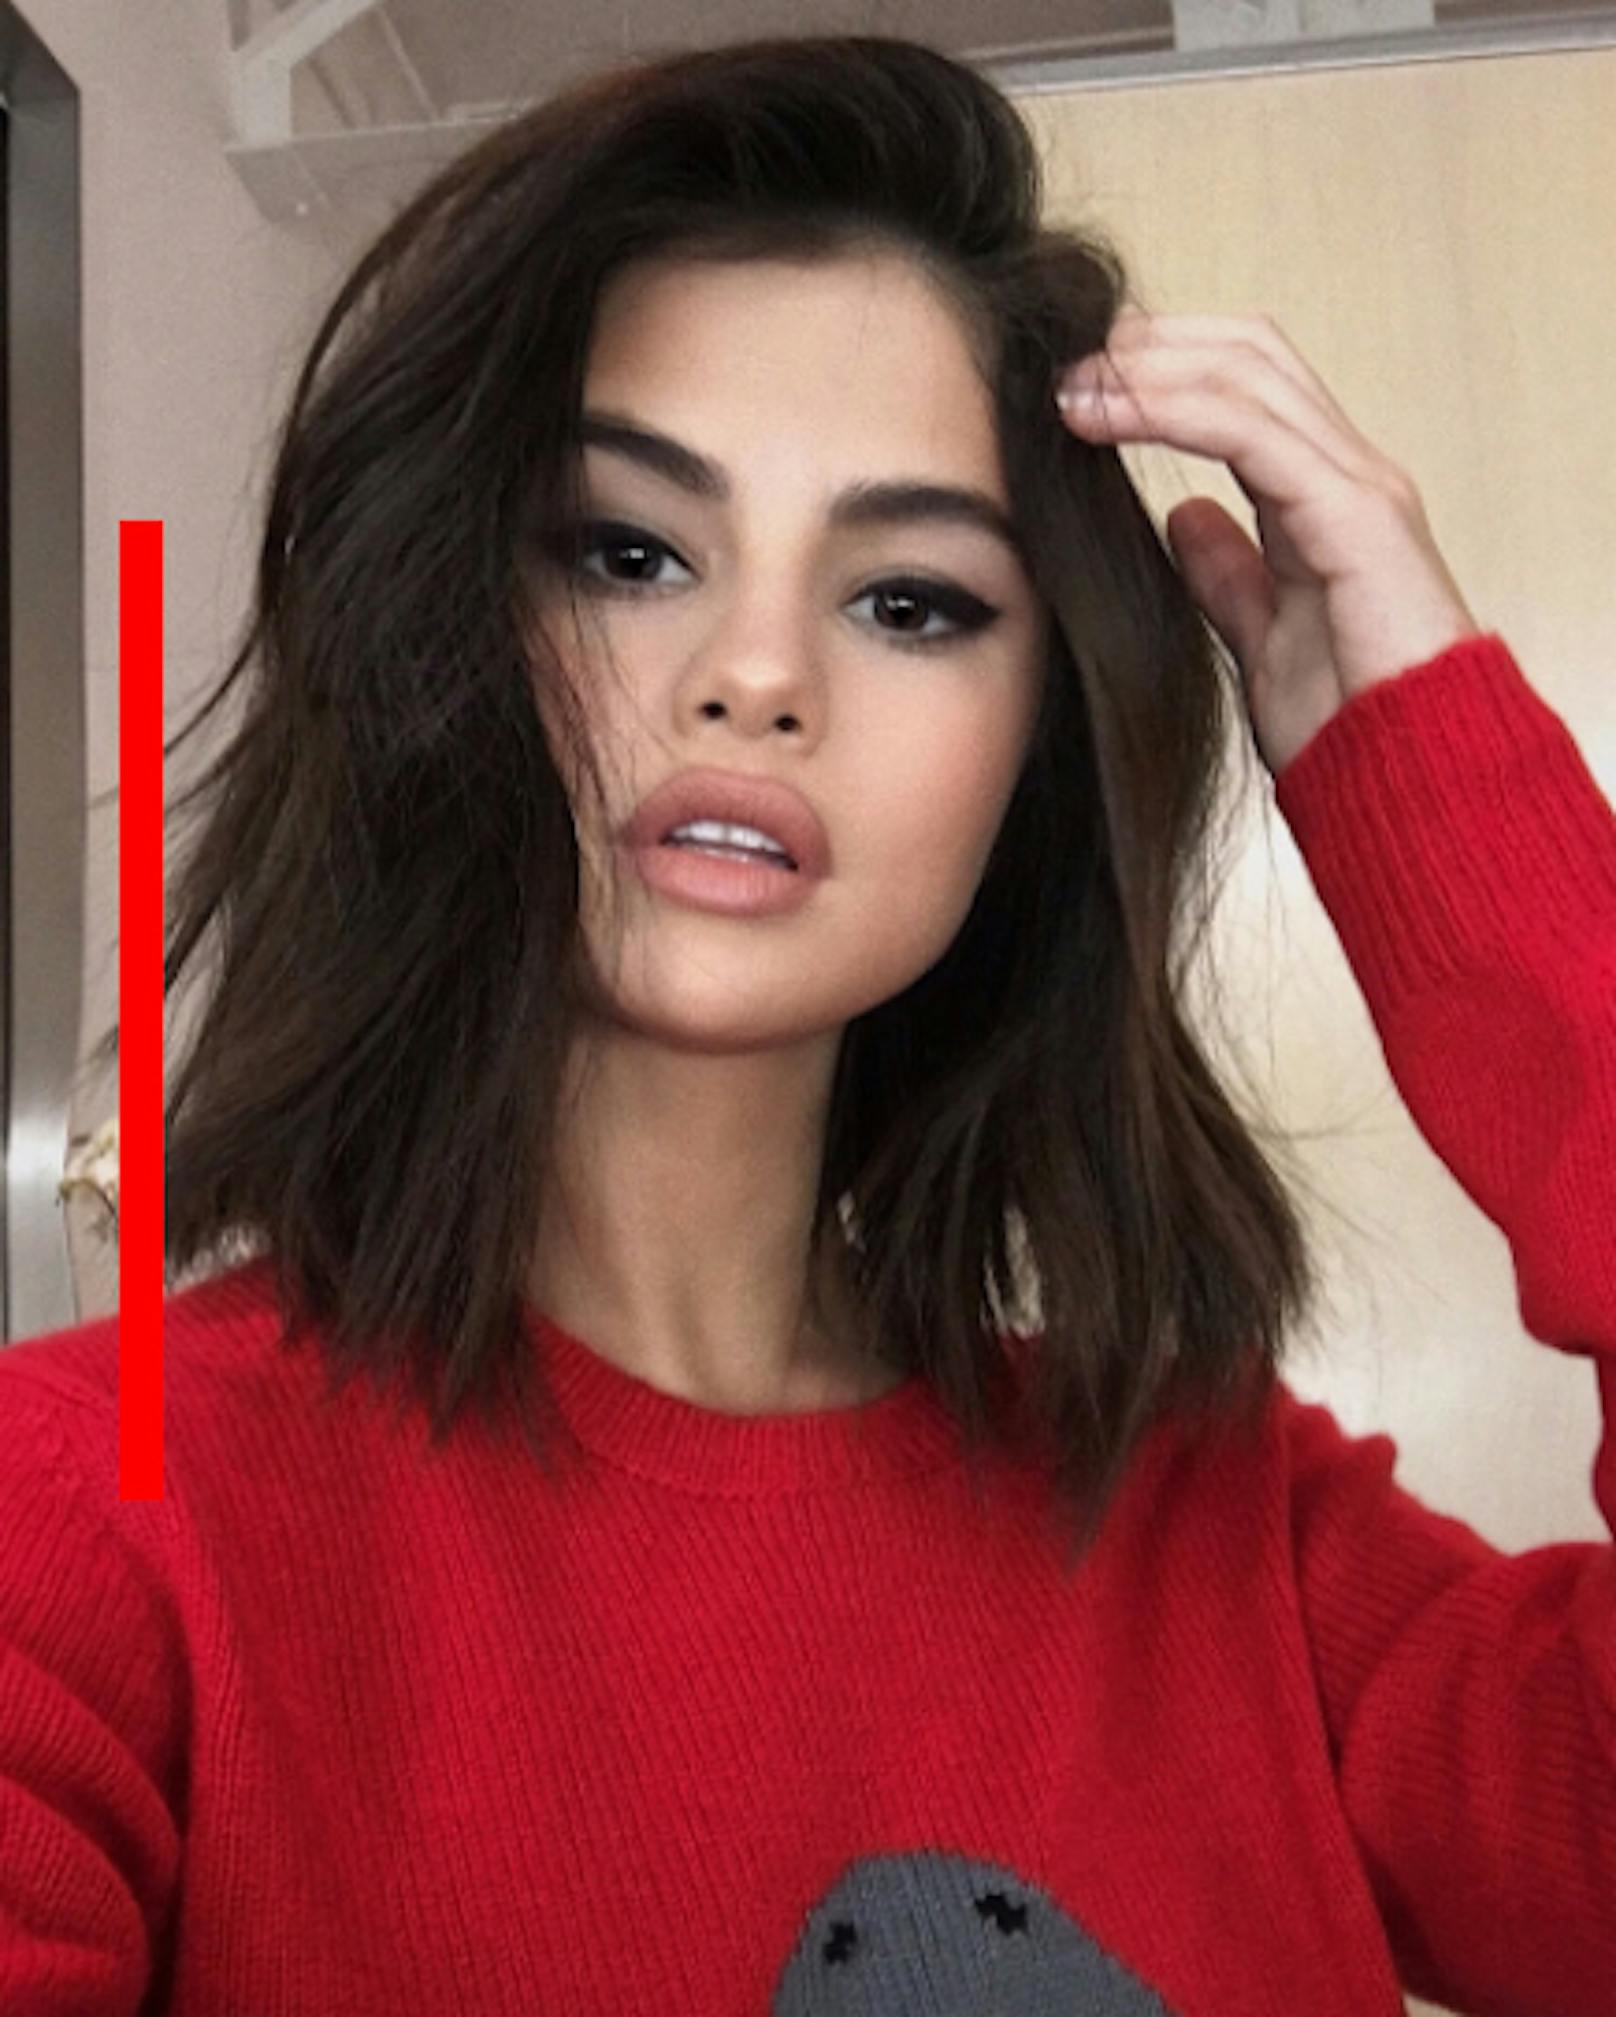 Andere lassen sich den Bauch wegmachen, Selena Gomez die Haare richten? Der unnötigste Photoshop-Fail ist am linken Seitenrand des Bildes erkennbar. Dort biegt sich der Türrahmen unschön.